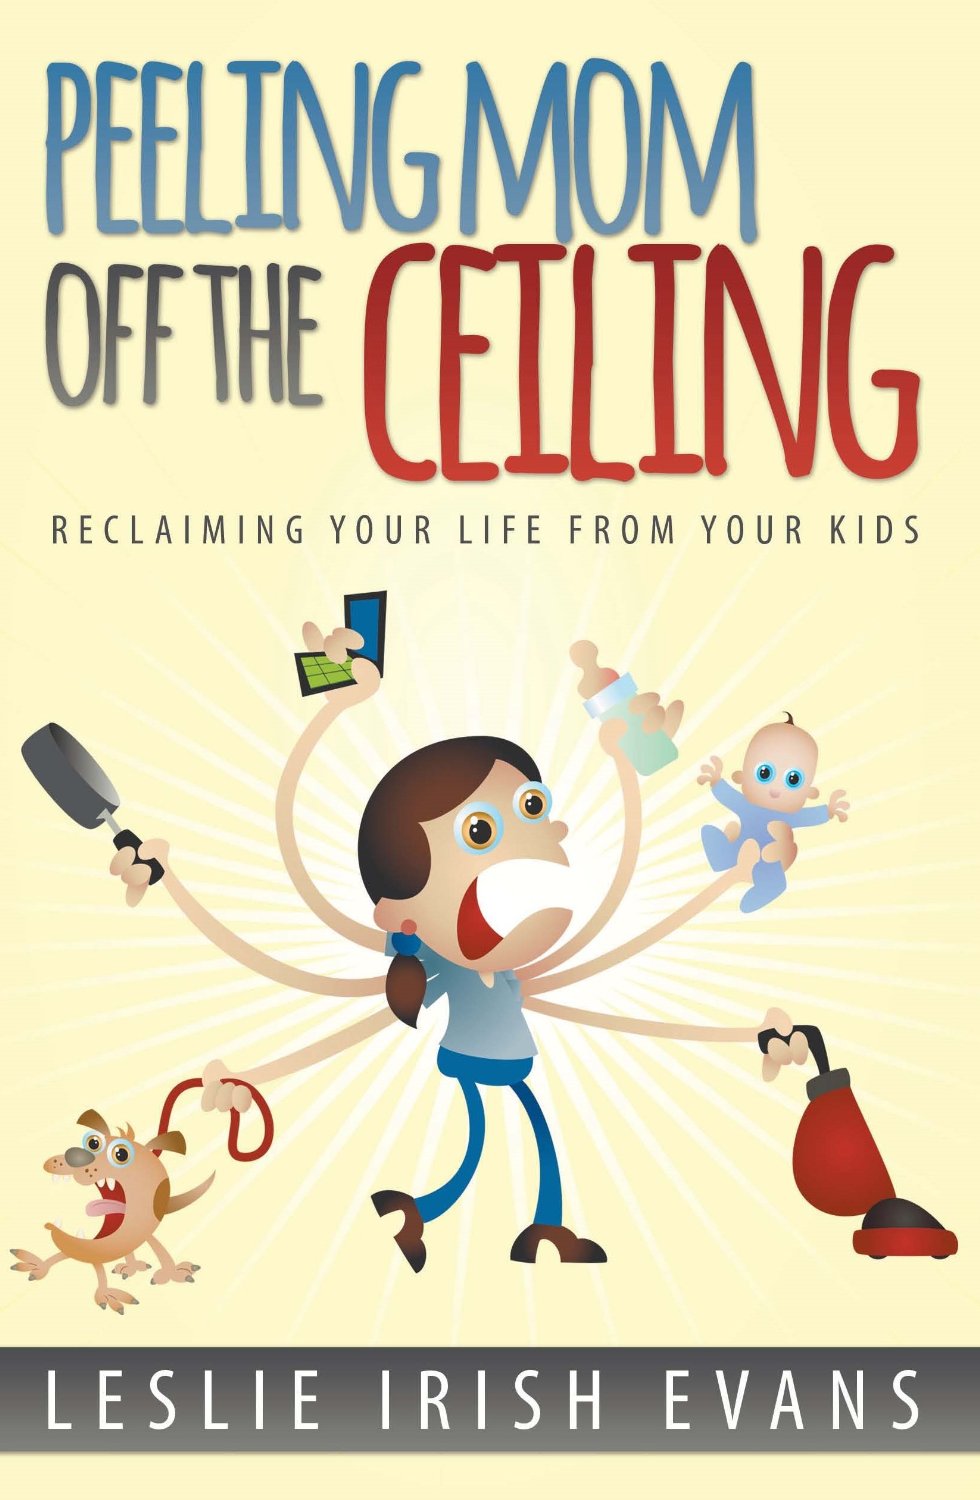 Peeling Mom Off the Ceiling by Leslie Irish Evans